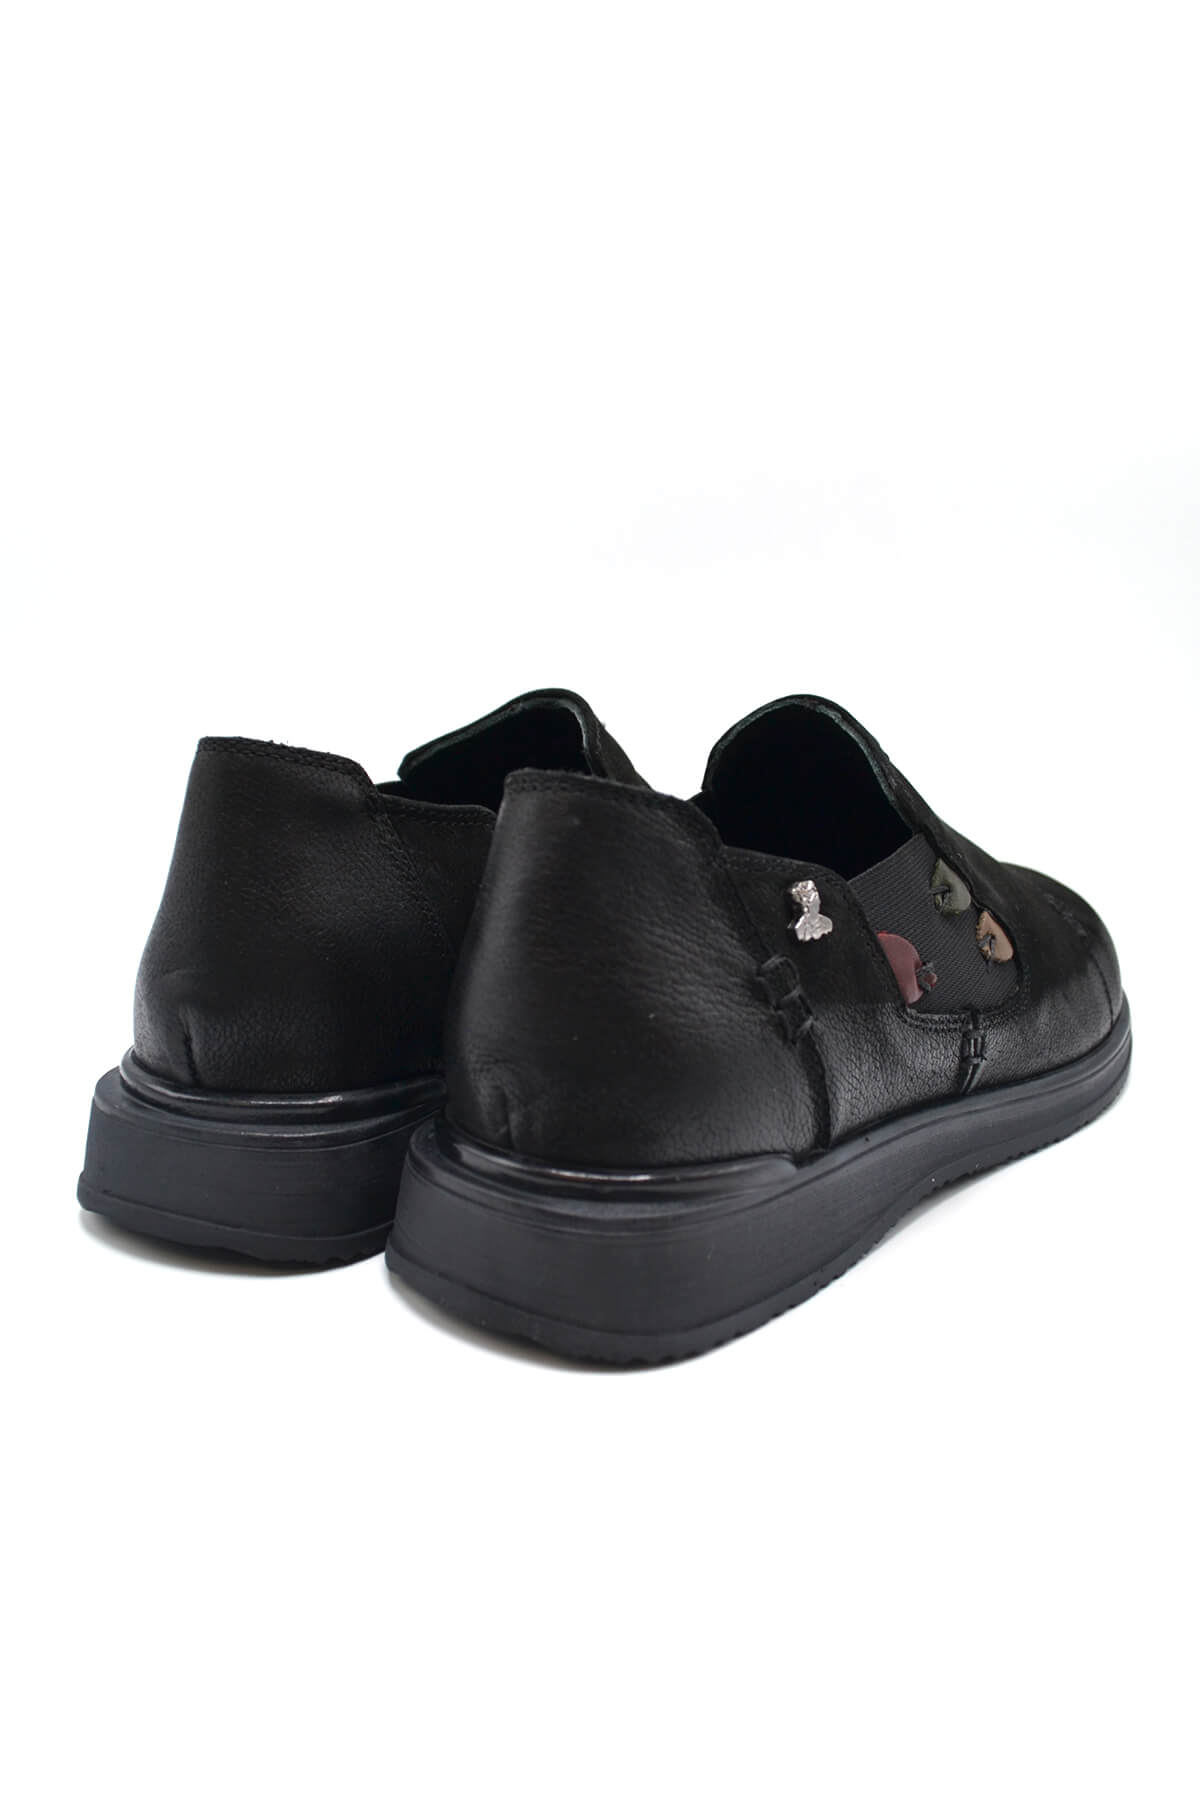 Kadın Casual Deri Ayakkabı Siyah 2250902K